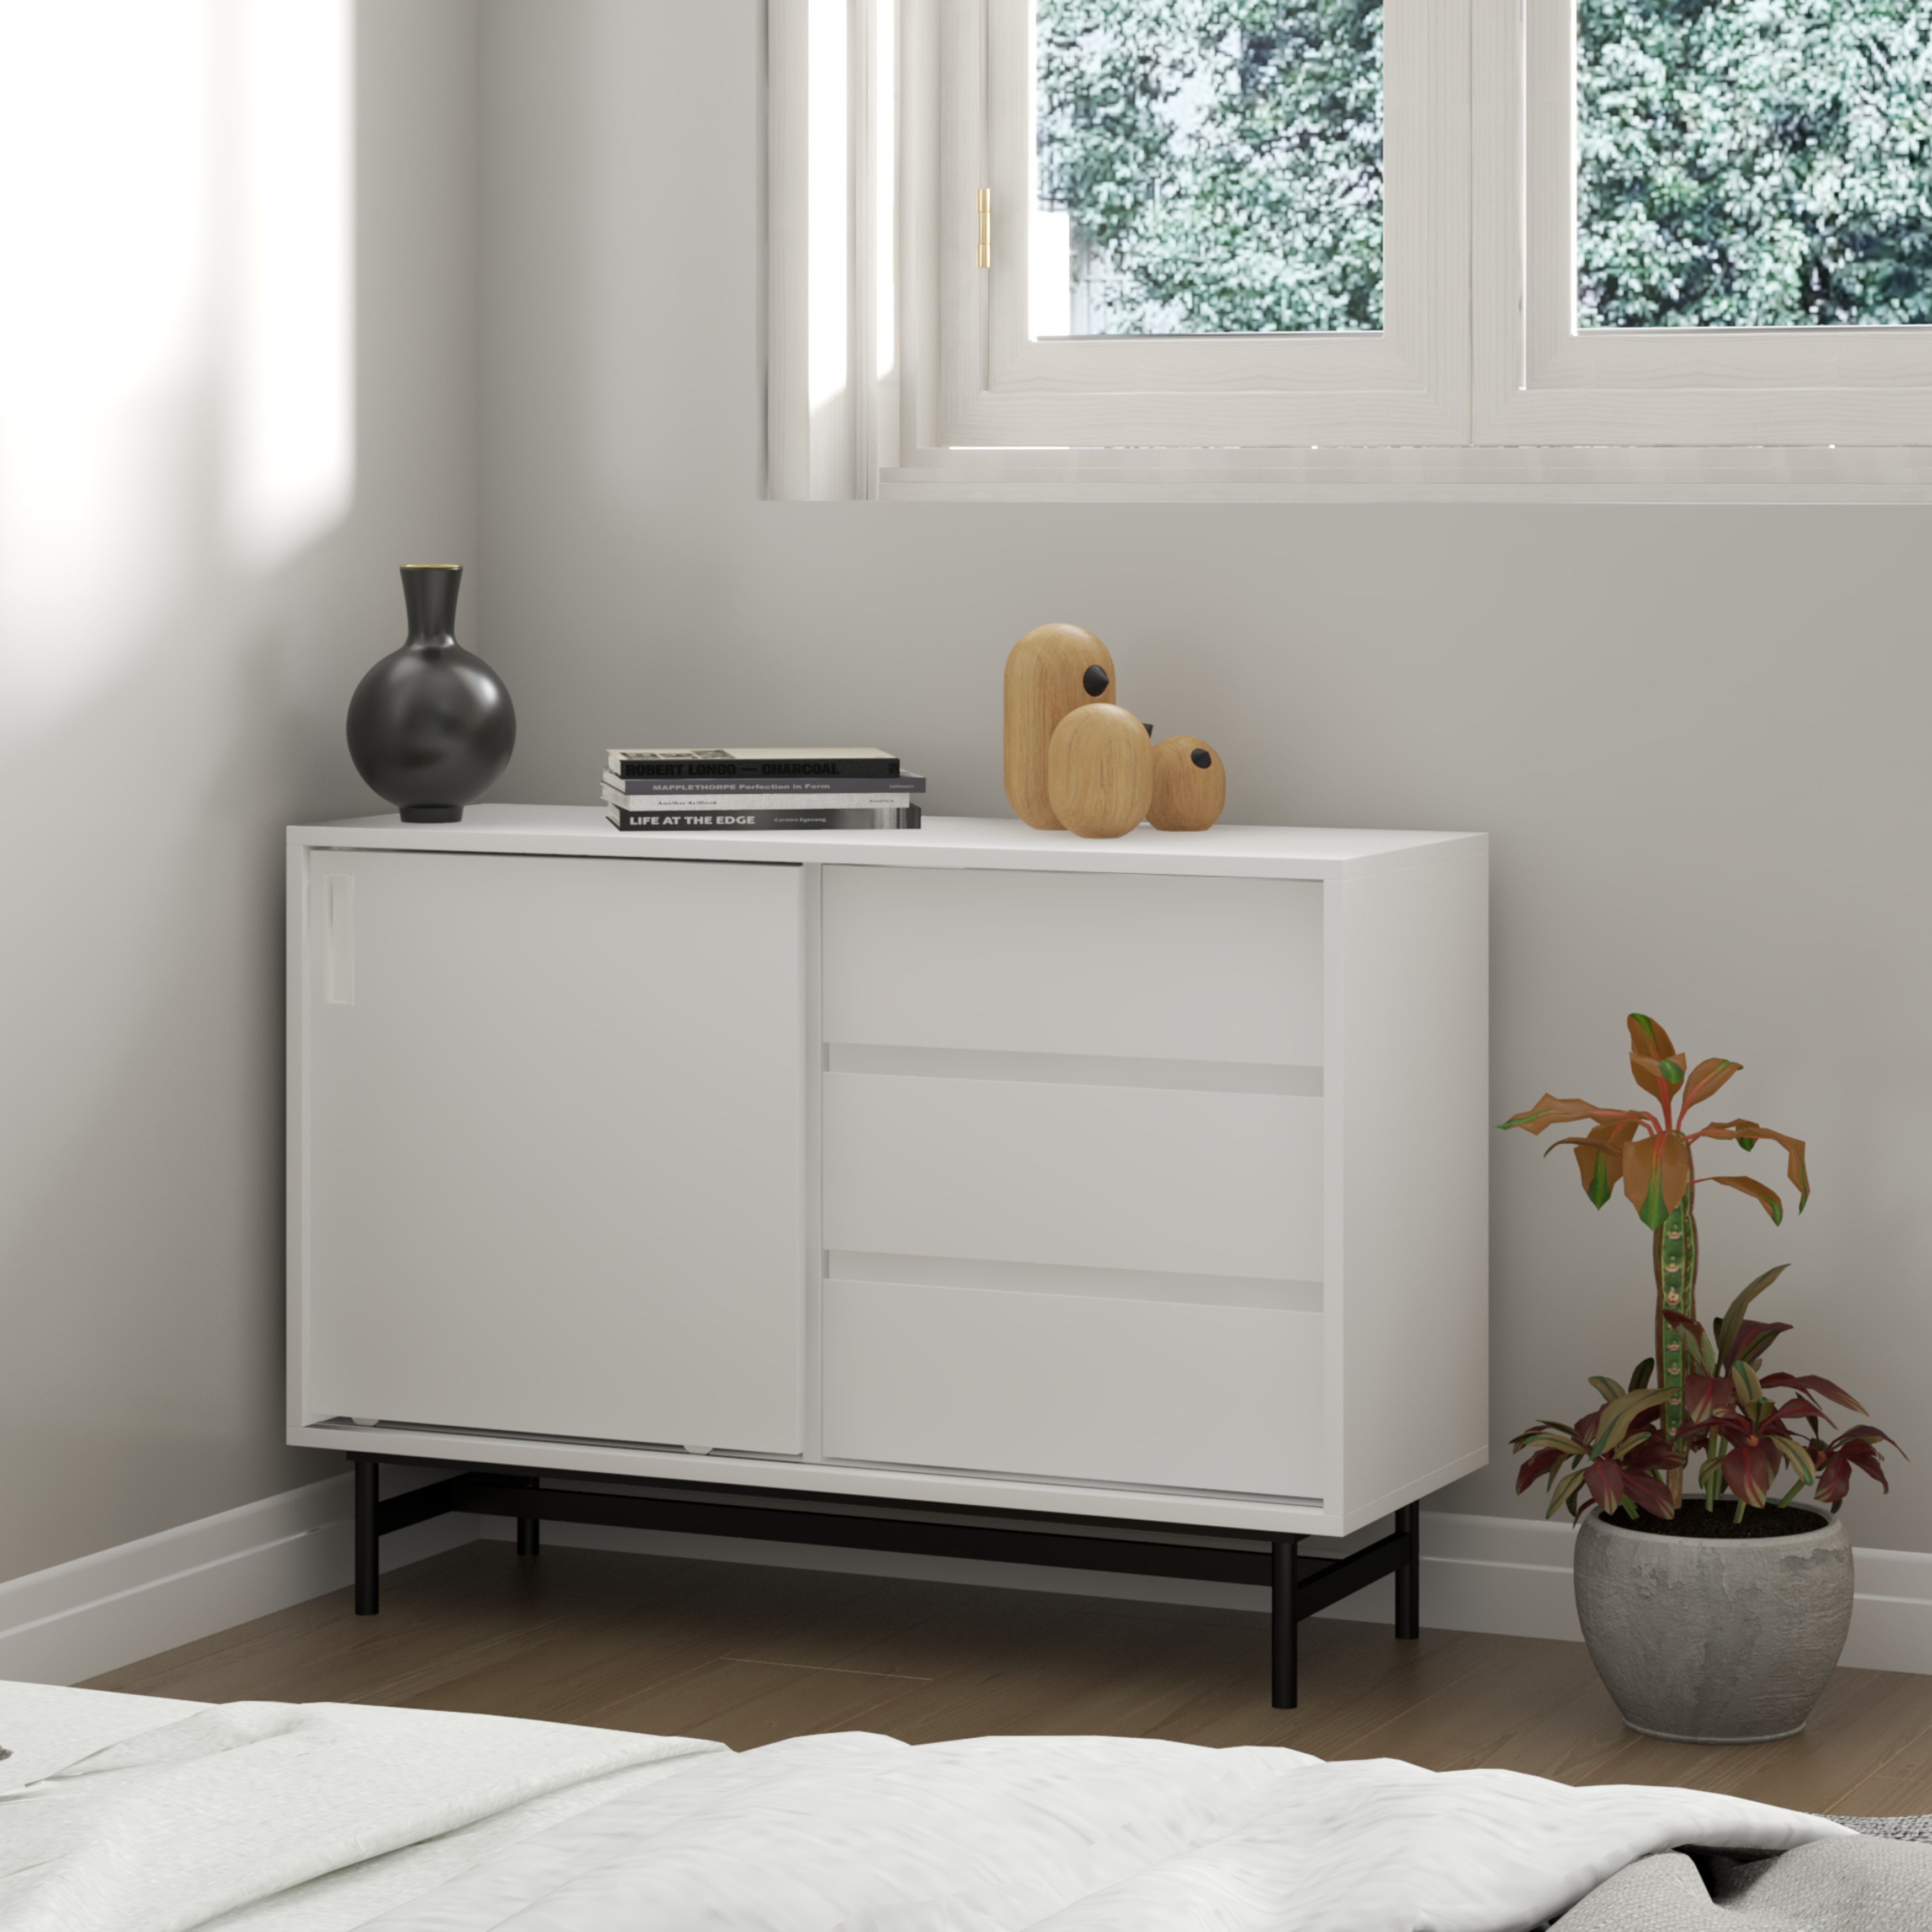 [Happy Home Furniture] LUCA, Tủ lưu trữ cánh lùa 3 ngăn kéo - Chân sắt, 100cm x 36cm x 70cm ( DxRxC), TCL_019